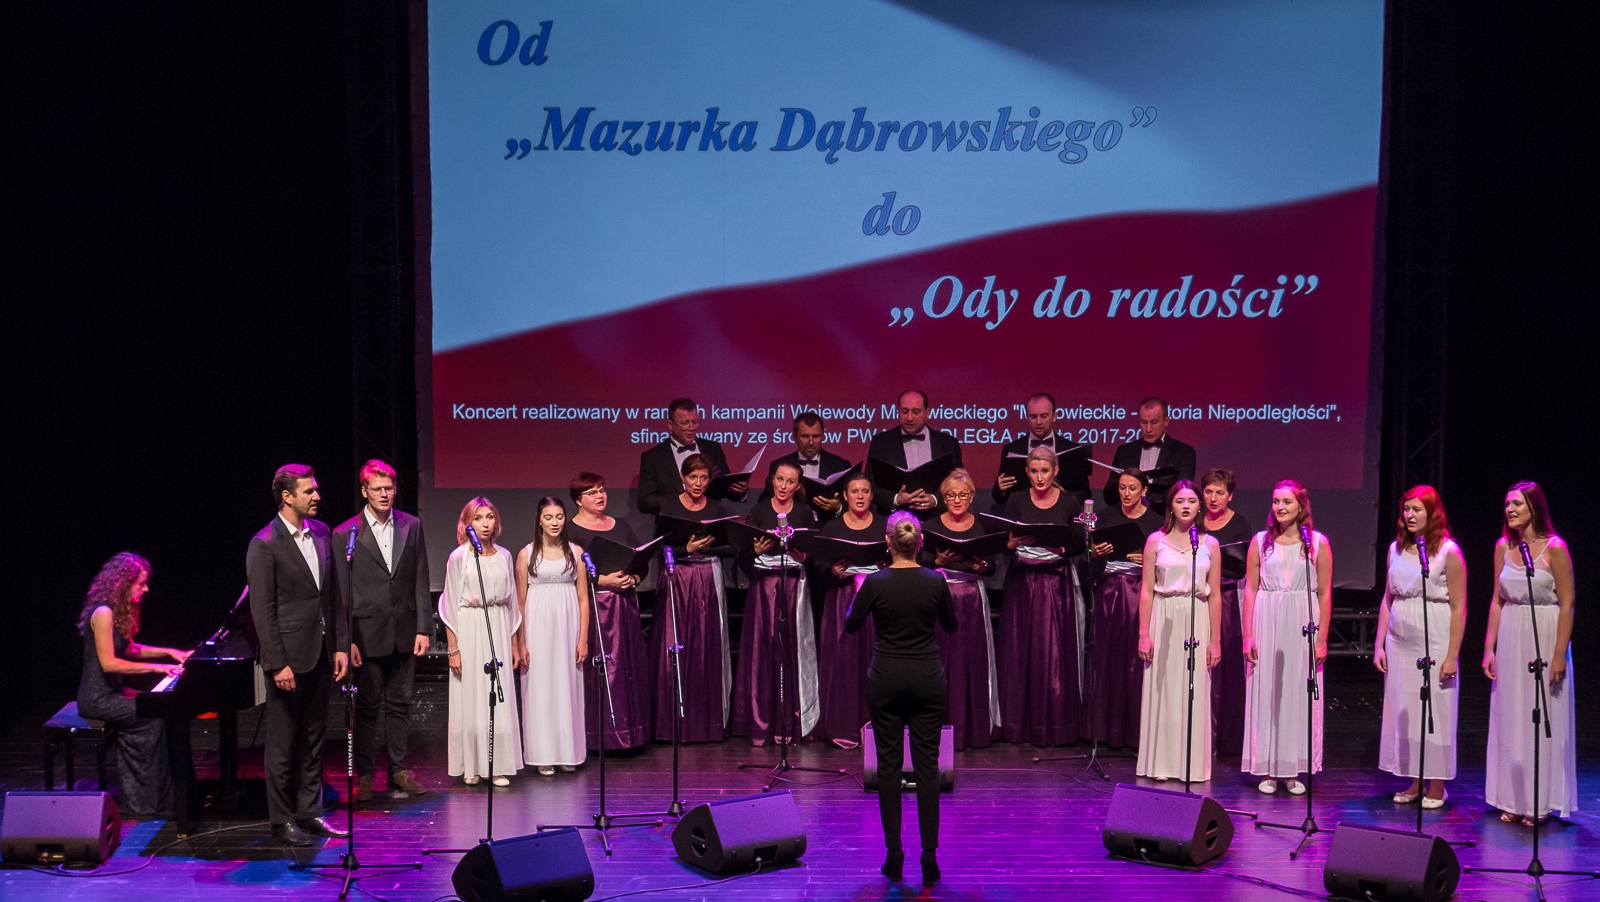 Koncert "Od Mazurka Dąbrowskiego do Ody do radości" dostępny online